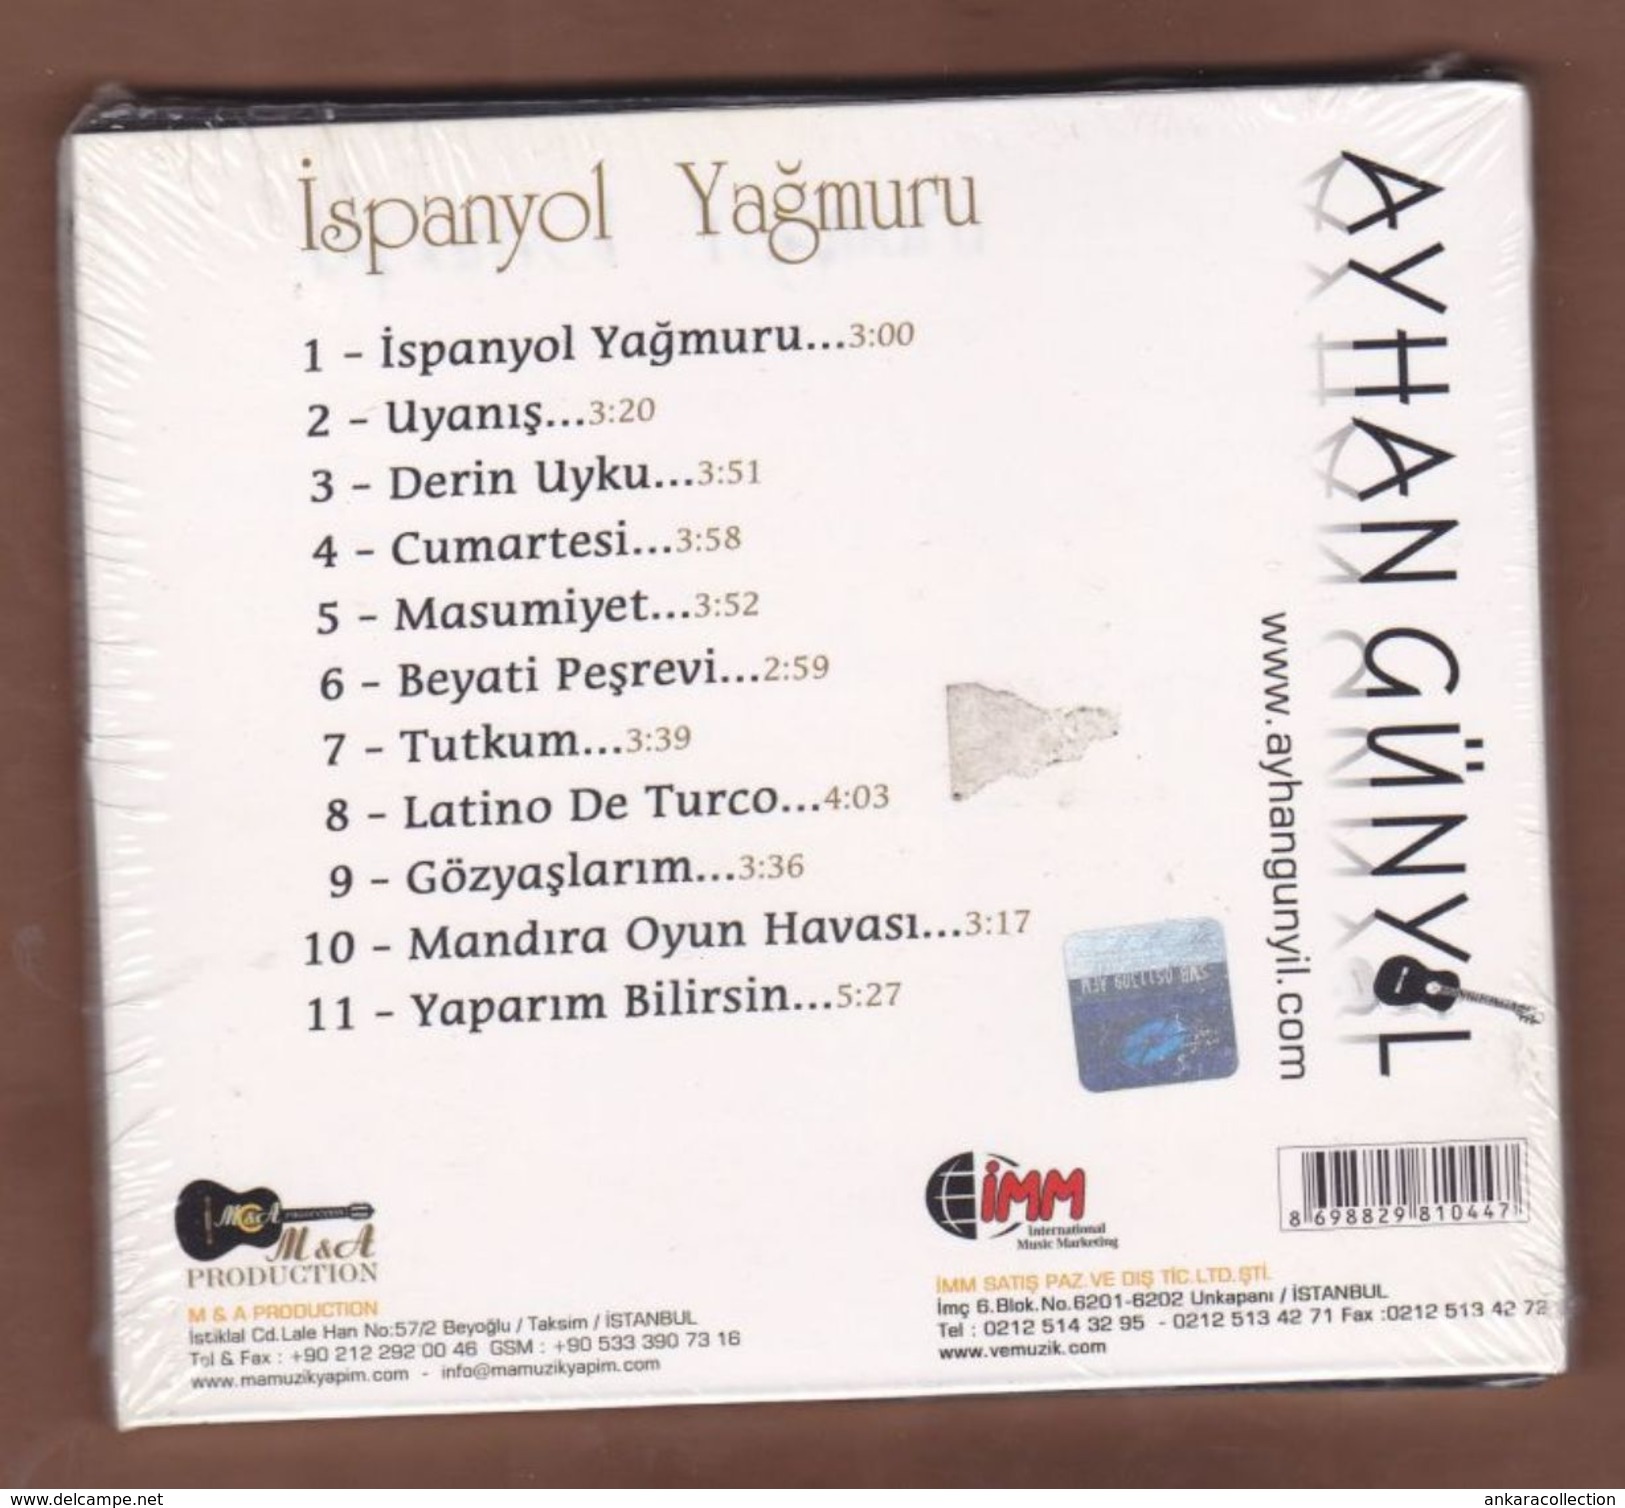 AC -  AYHAN GUNYOL ISPANYOL YAGMURU BRAND NEW TURKISH MUSIC CD - World Music